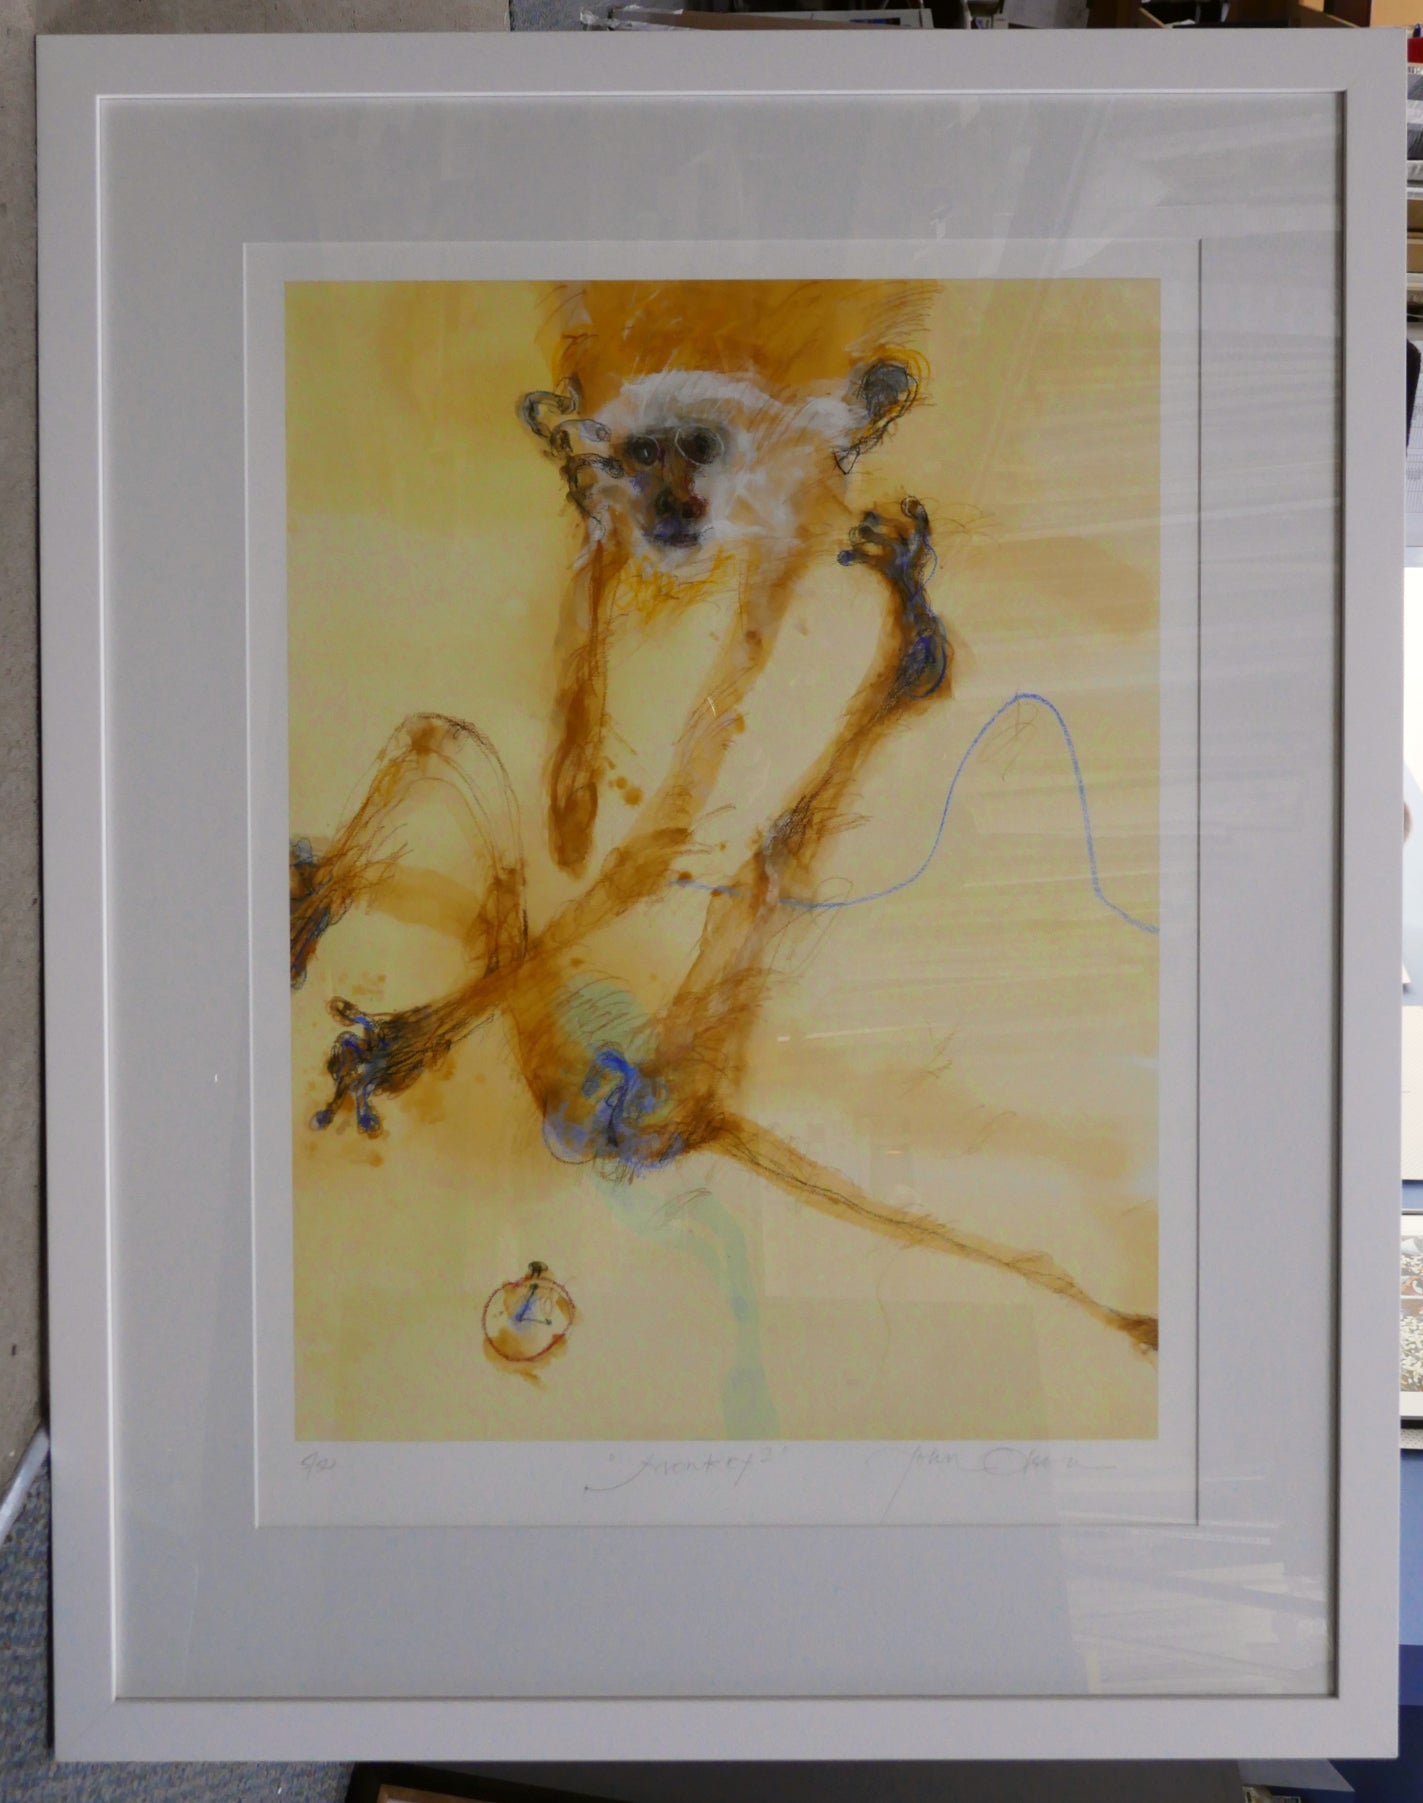 John Olsen 'Monkey I' - pigment print on paper